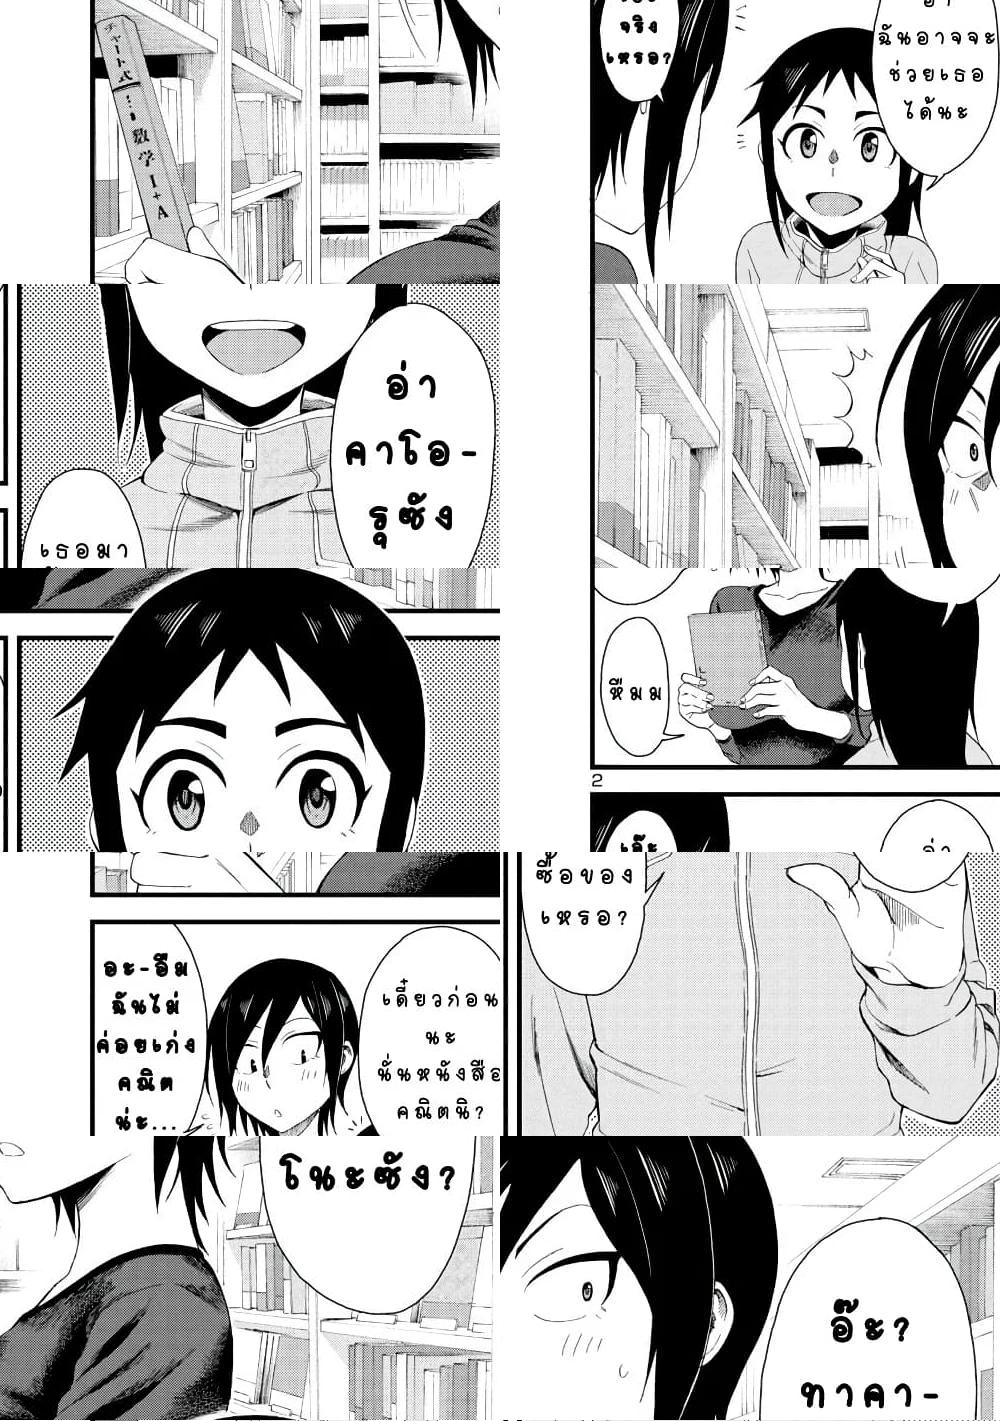 Hitomi-chan Is Shy With Strangers วันๆของน้องฮิโตมิก็เป็นแบบนี้แหล่ะ - 8 - 2